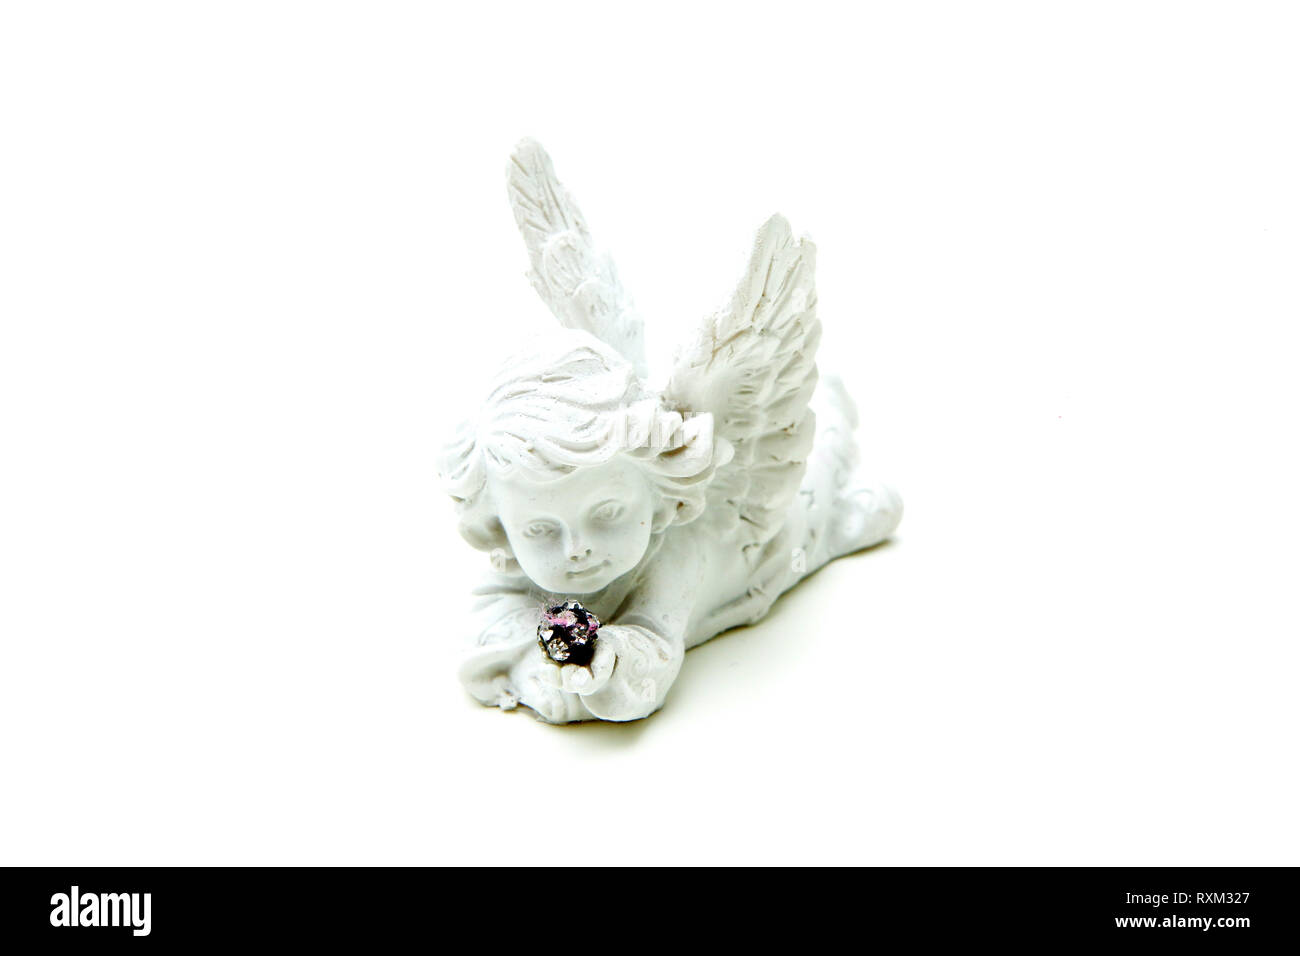 Une petite sculpture décorative d'un ange enfant tenant quelques petites pierres brillantes dans une forme sphérique. Banque D'Images